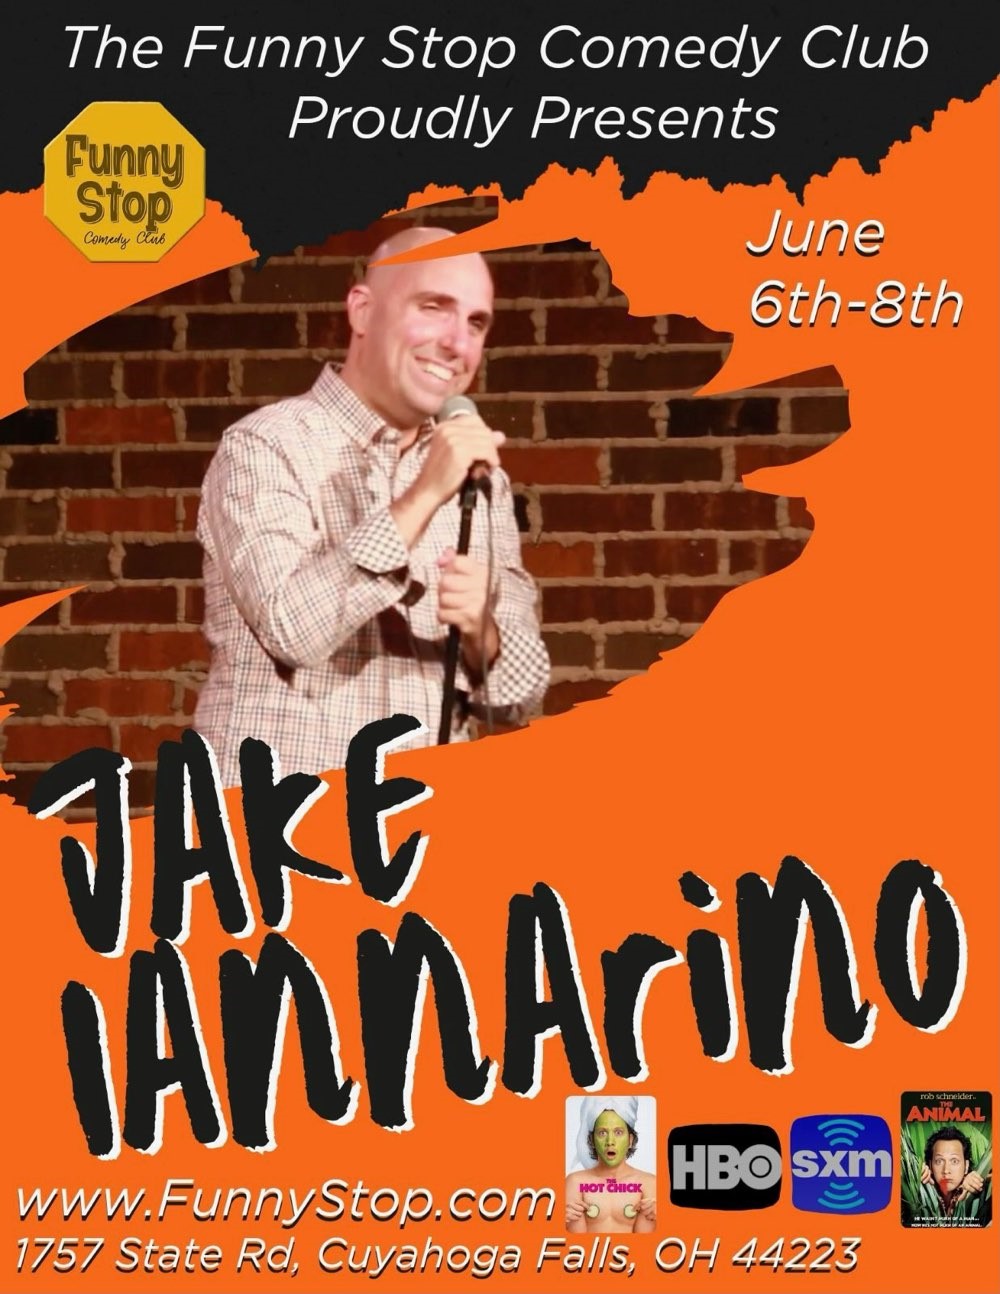 Jake Iannarino - Thur. 8PM Show Funny Stop Comedy Club on jun. 06, 20:00@Funny Stop Comedy Club - Compra entradas y obtén información enFunny Stop funnystop.online